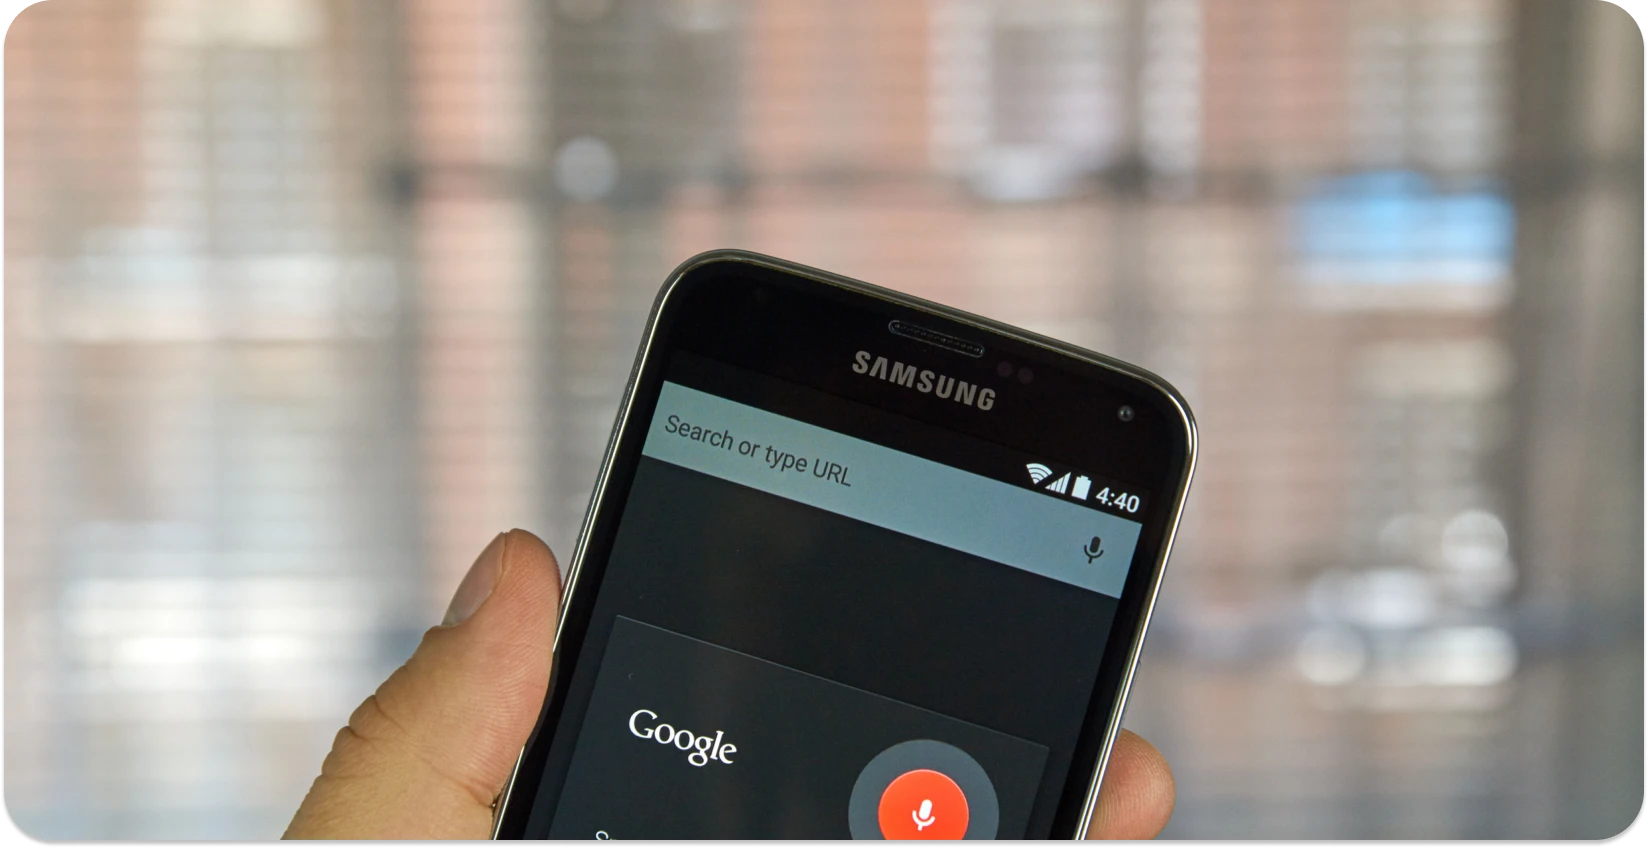 Mão segurando um smartphone com a pesquisa por voz do Google pronta, simbolizando o software de ditado.